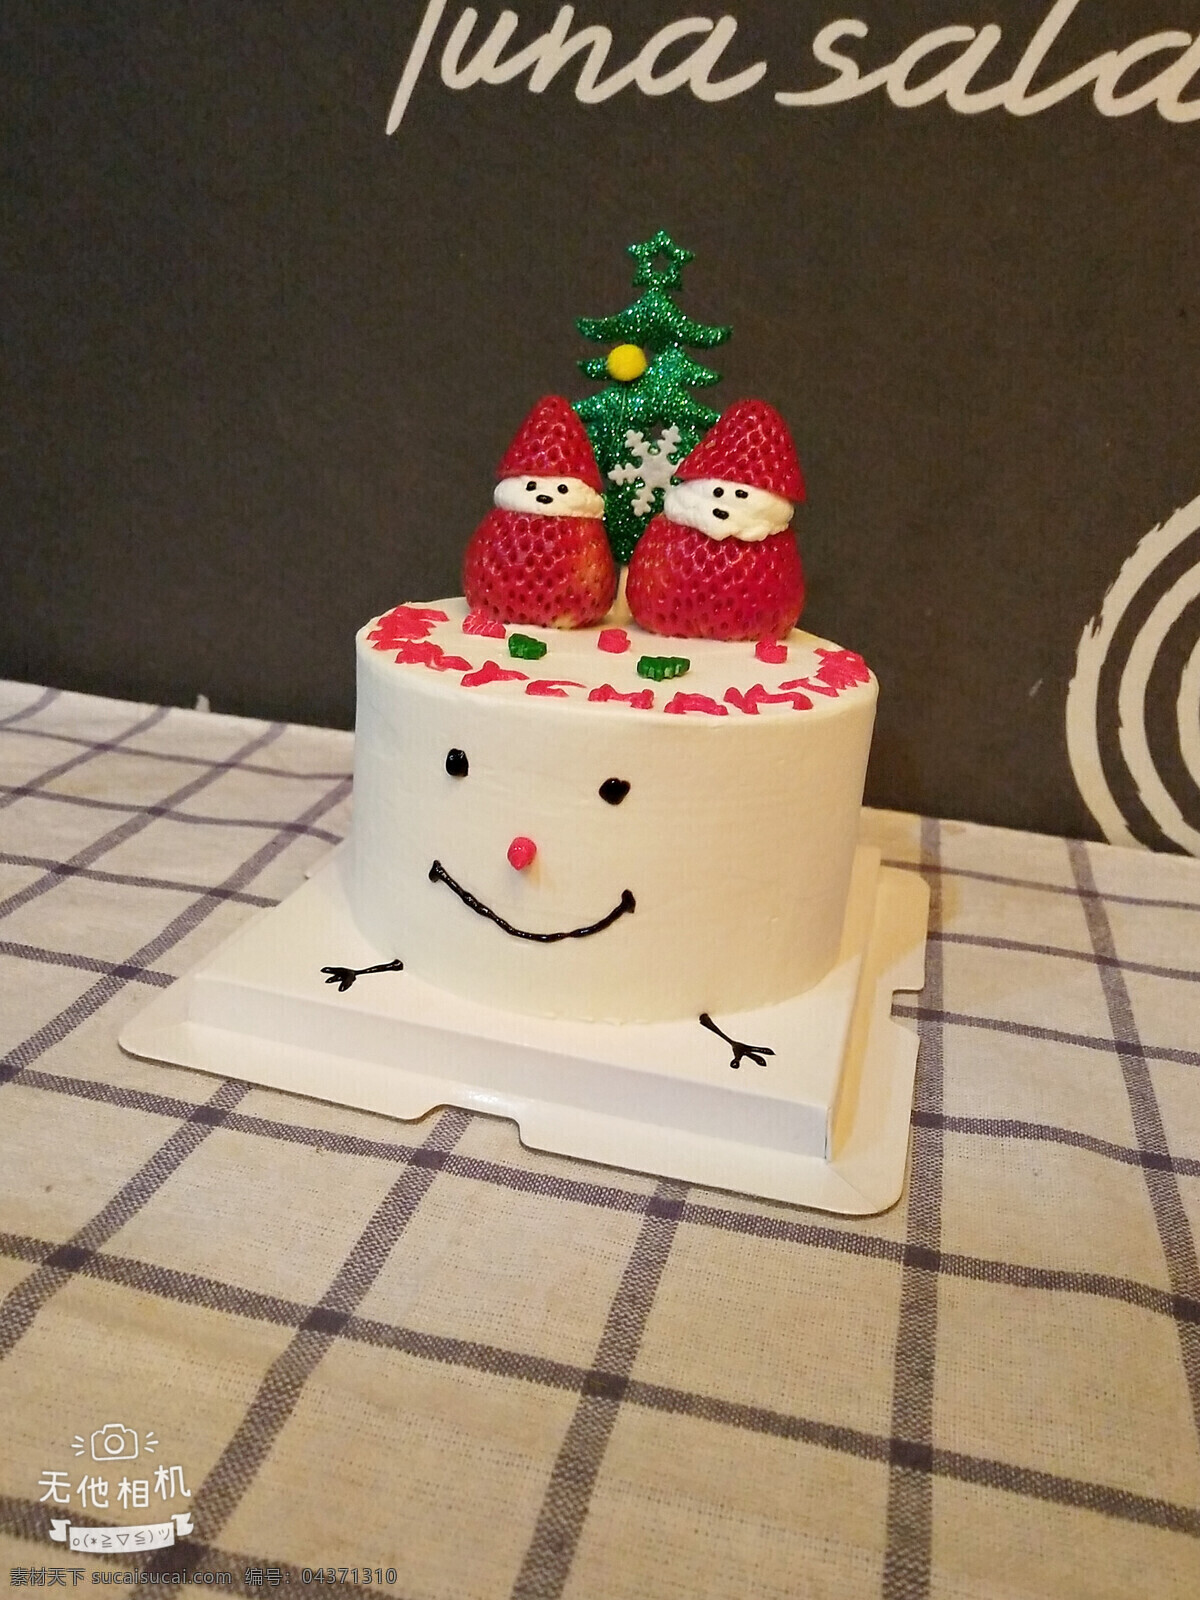 圣诞蛋糕 圣诞老人 草莓蛋糕 雪人 雪人蛋糕 美食 西式美食 西式甜品 迷你蛋糕 蛋糕 圣诞树 餐饮美食 西餐美食